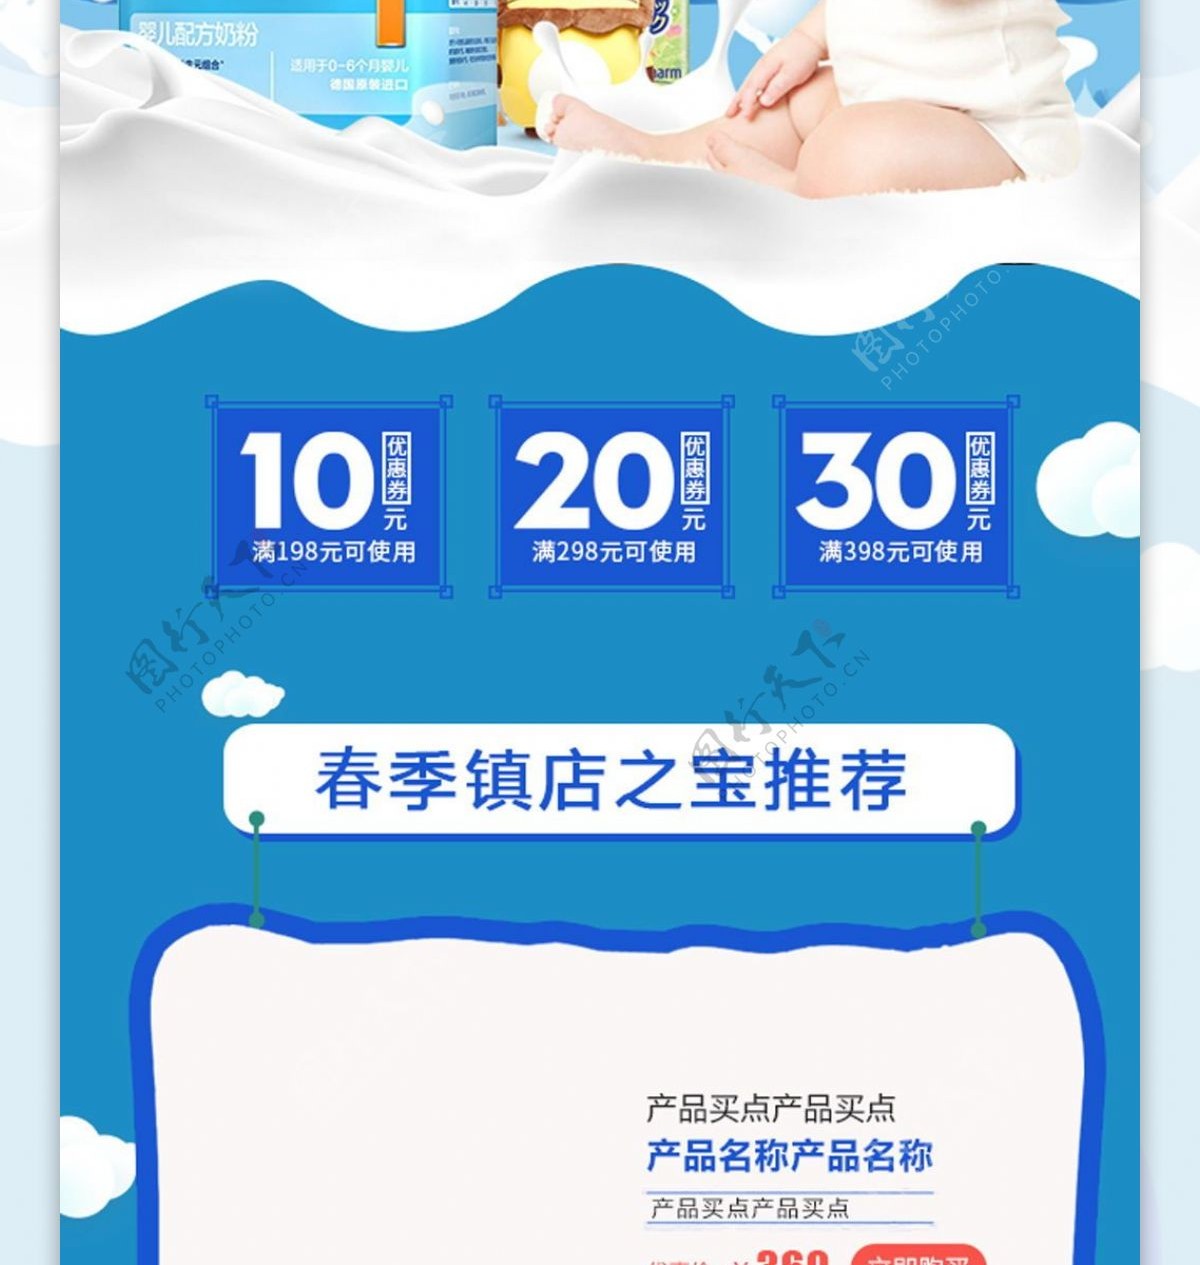 电商淘宝母婴用品儿童洗护用品促销首页模板psd